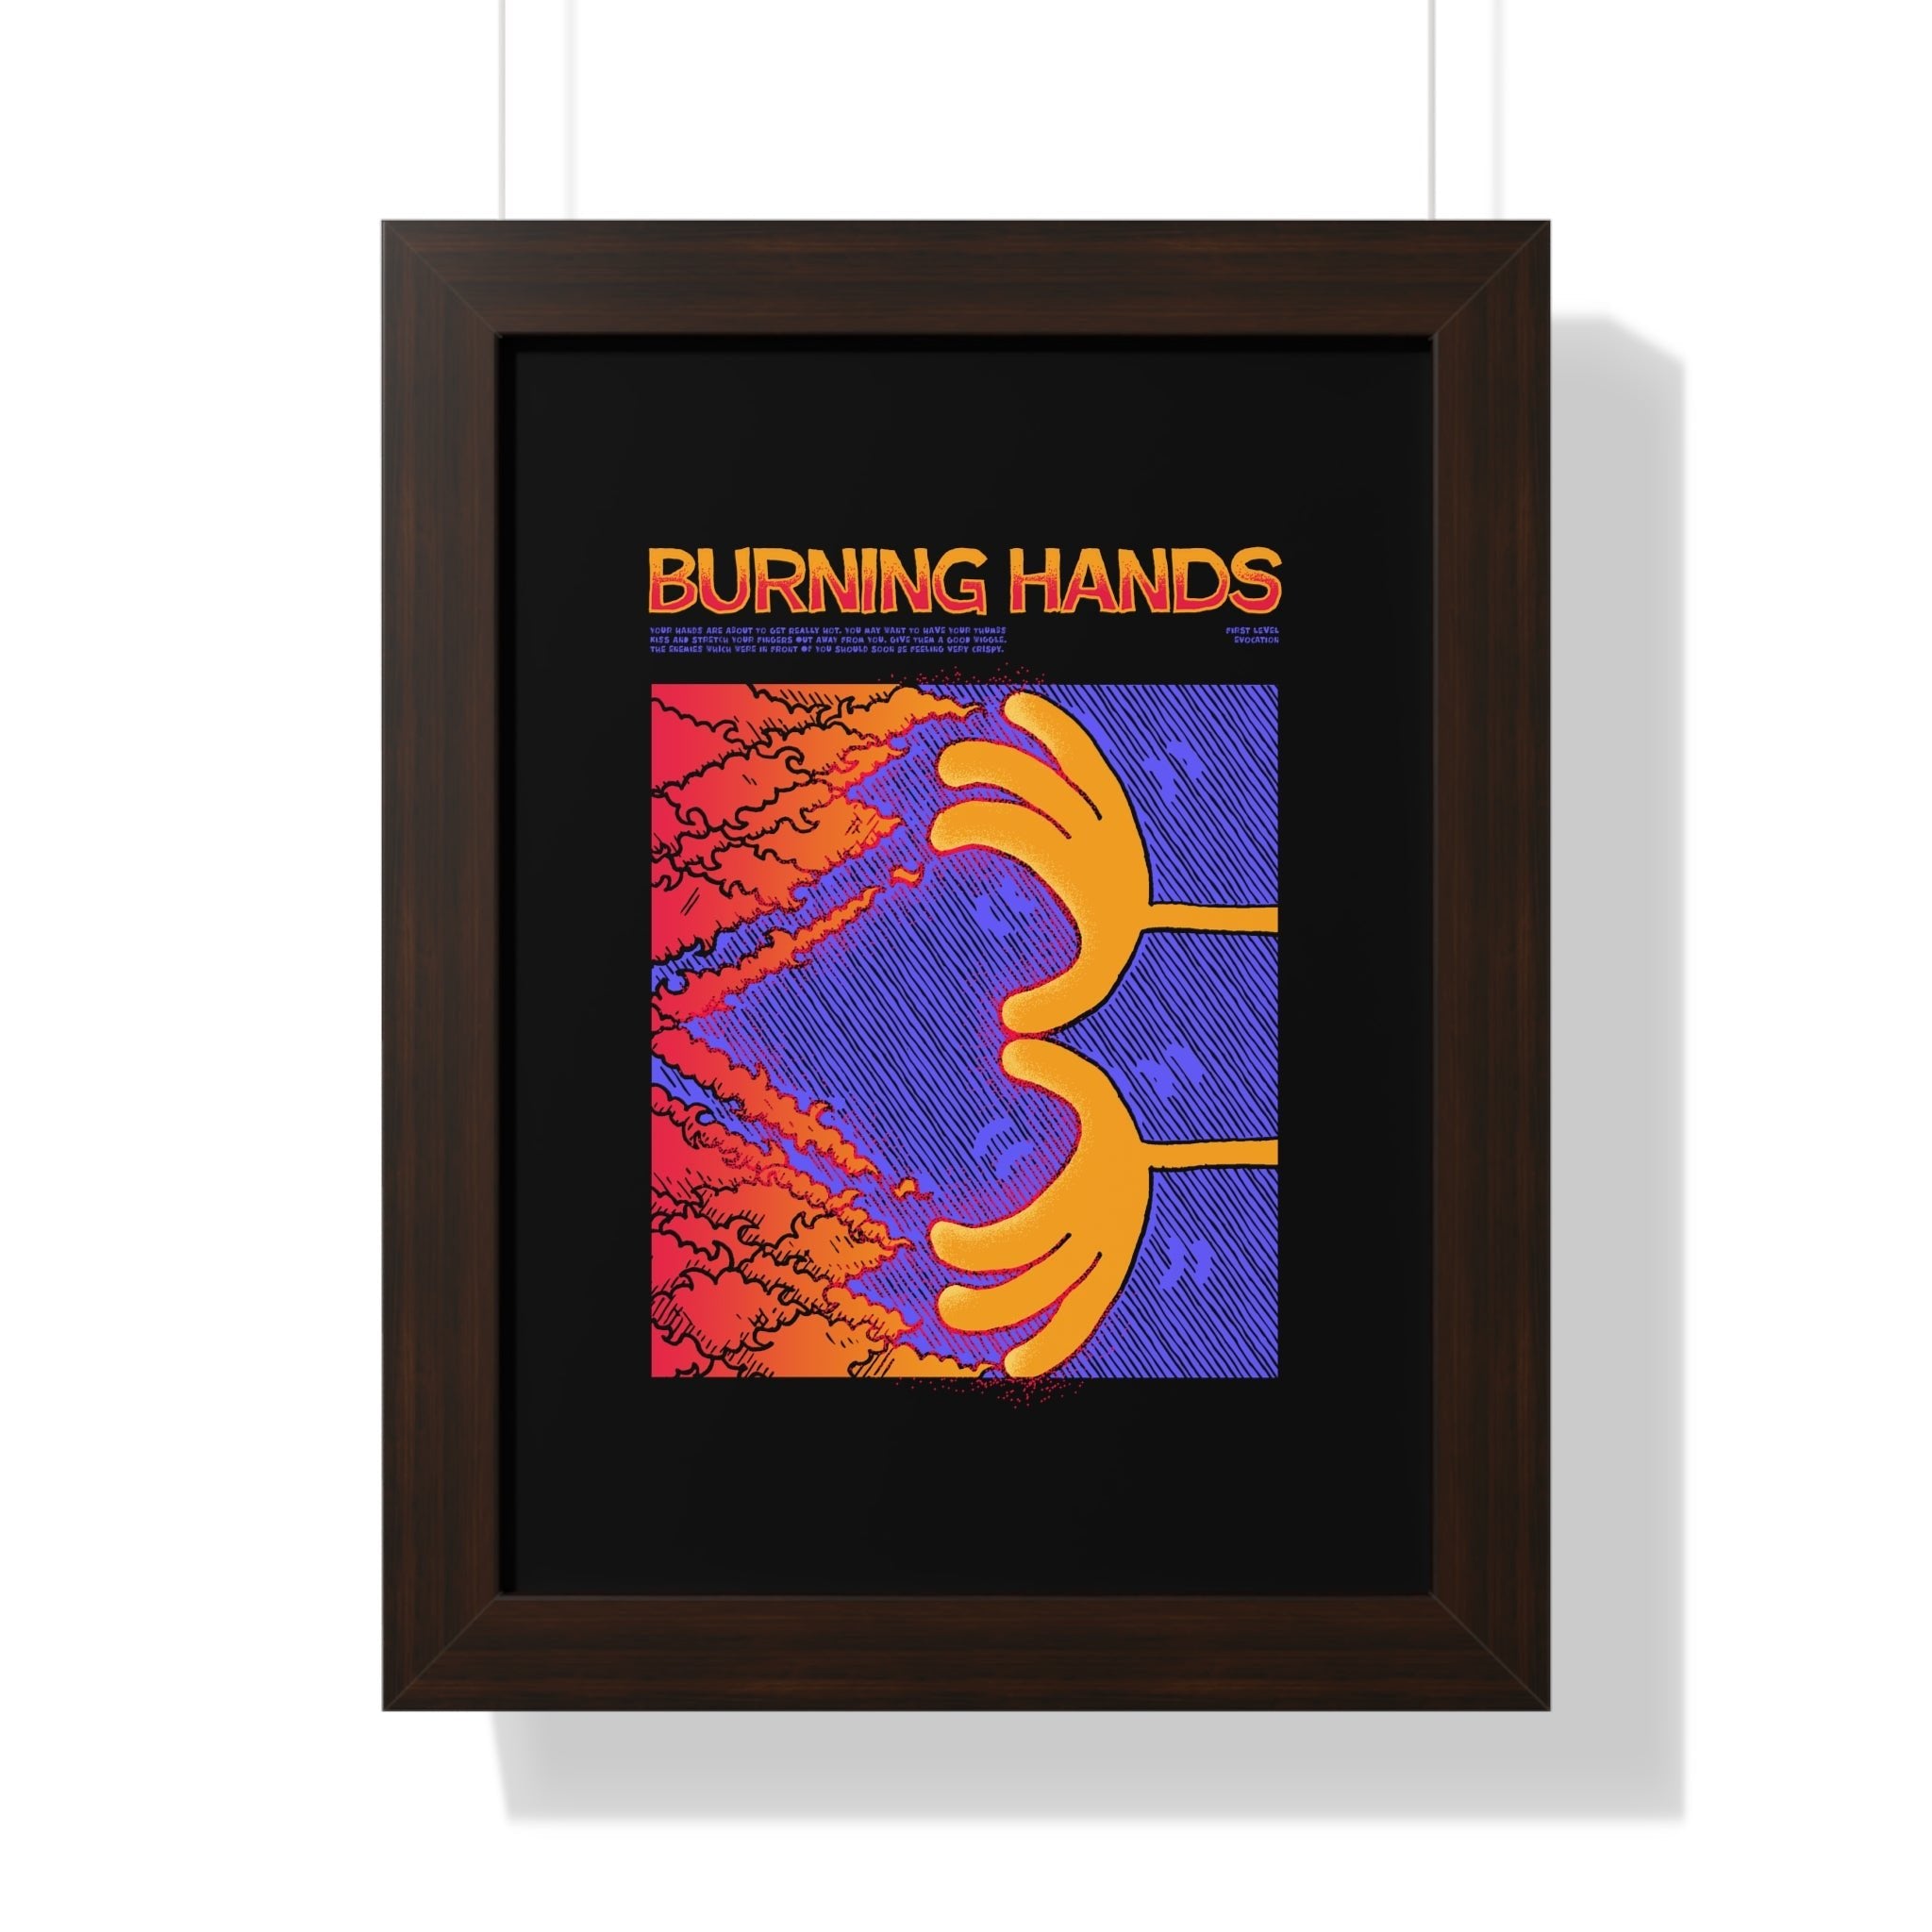 Burning Hands | Framed Poster - Framed Poster - Ace of Gnomes - 33226999480611472136